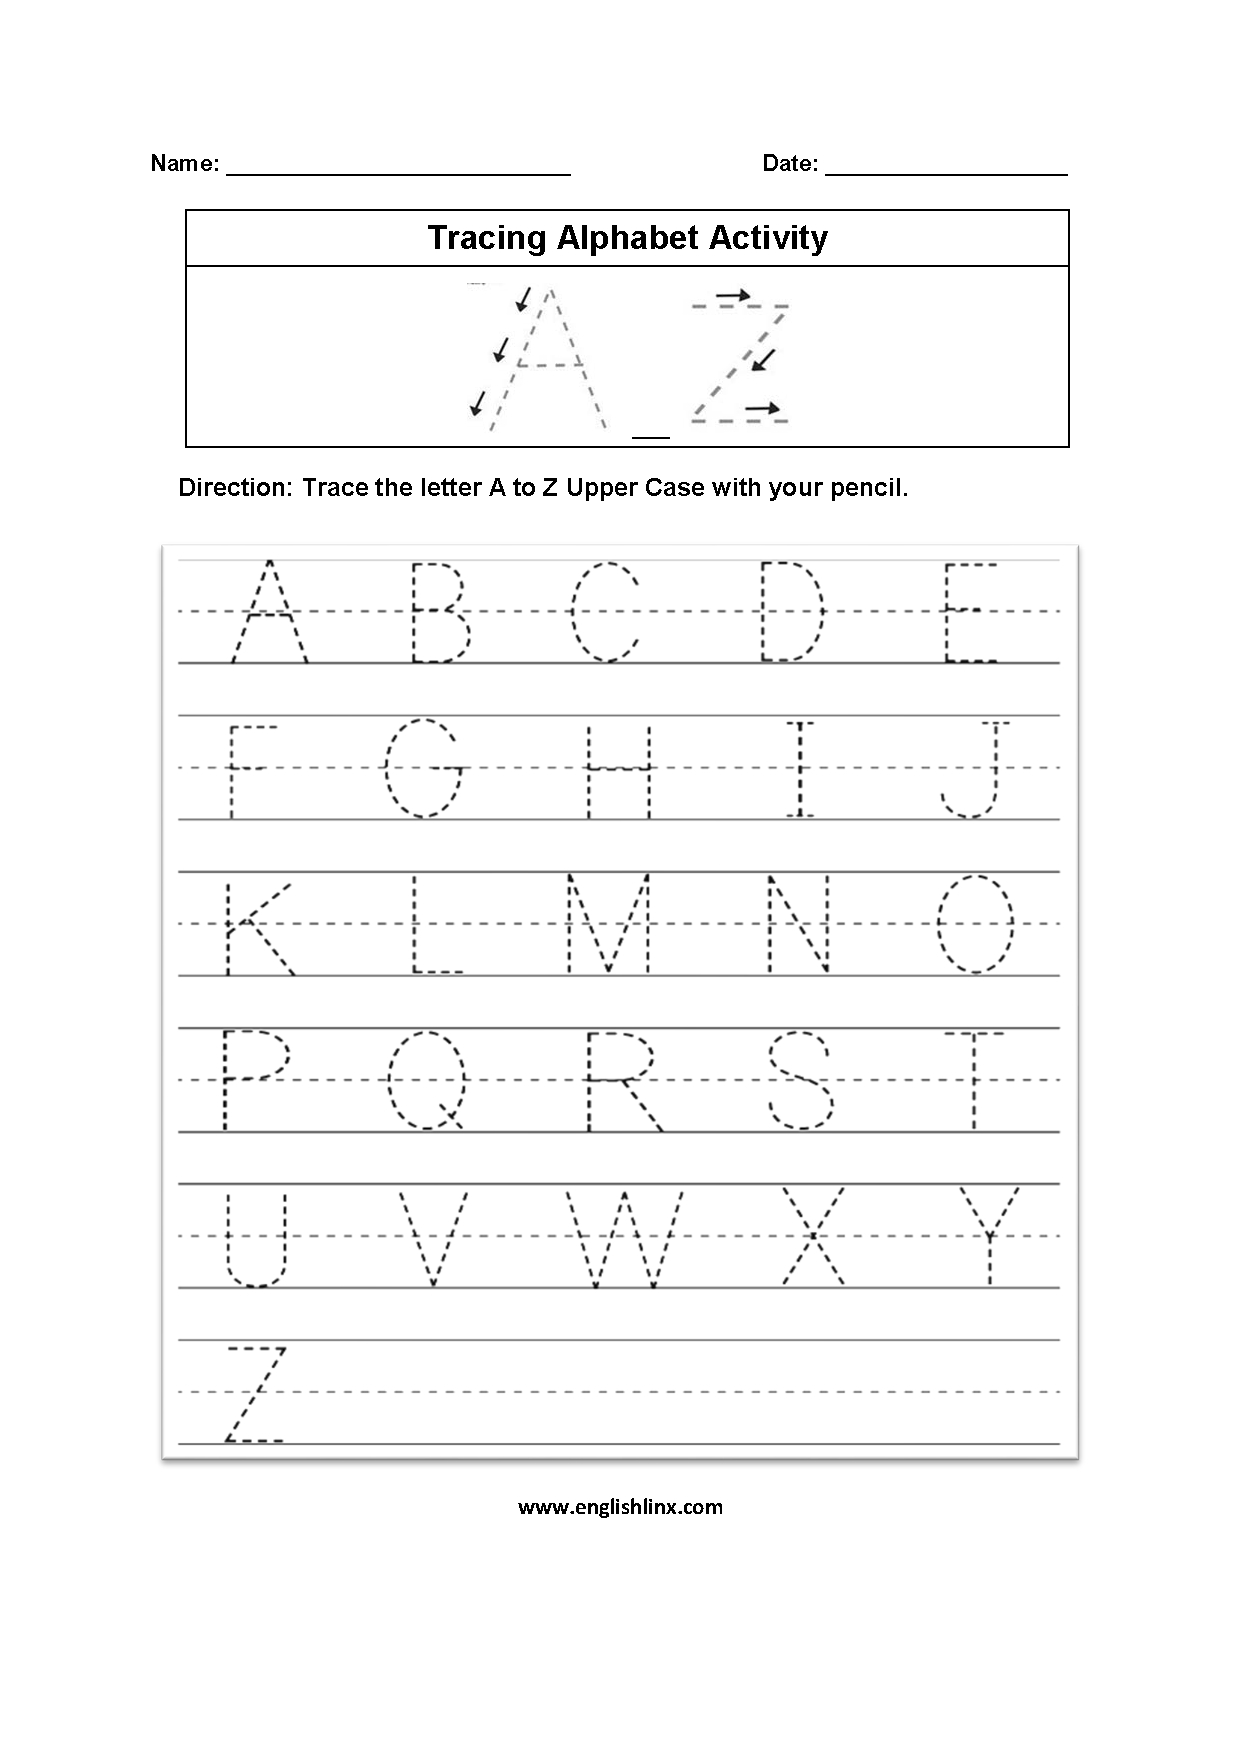 Alphabet Worksheets | Tracing Alphabet Worksheets intended for Letter Tracing Worksheets A-Z Pdf